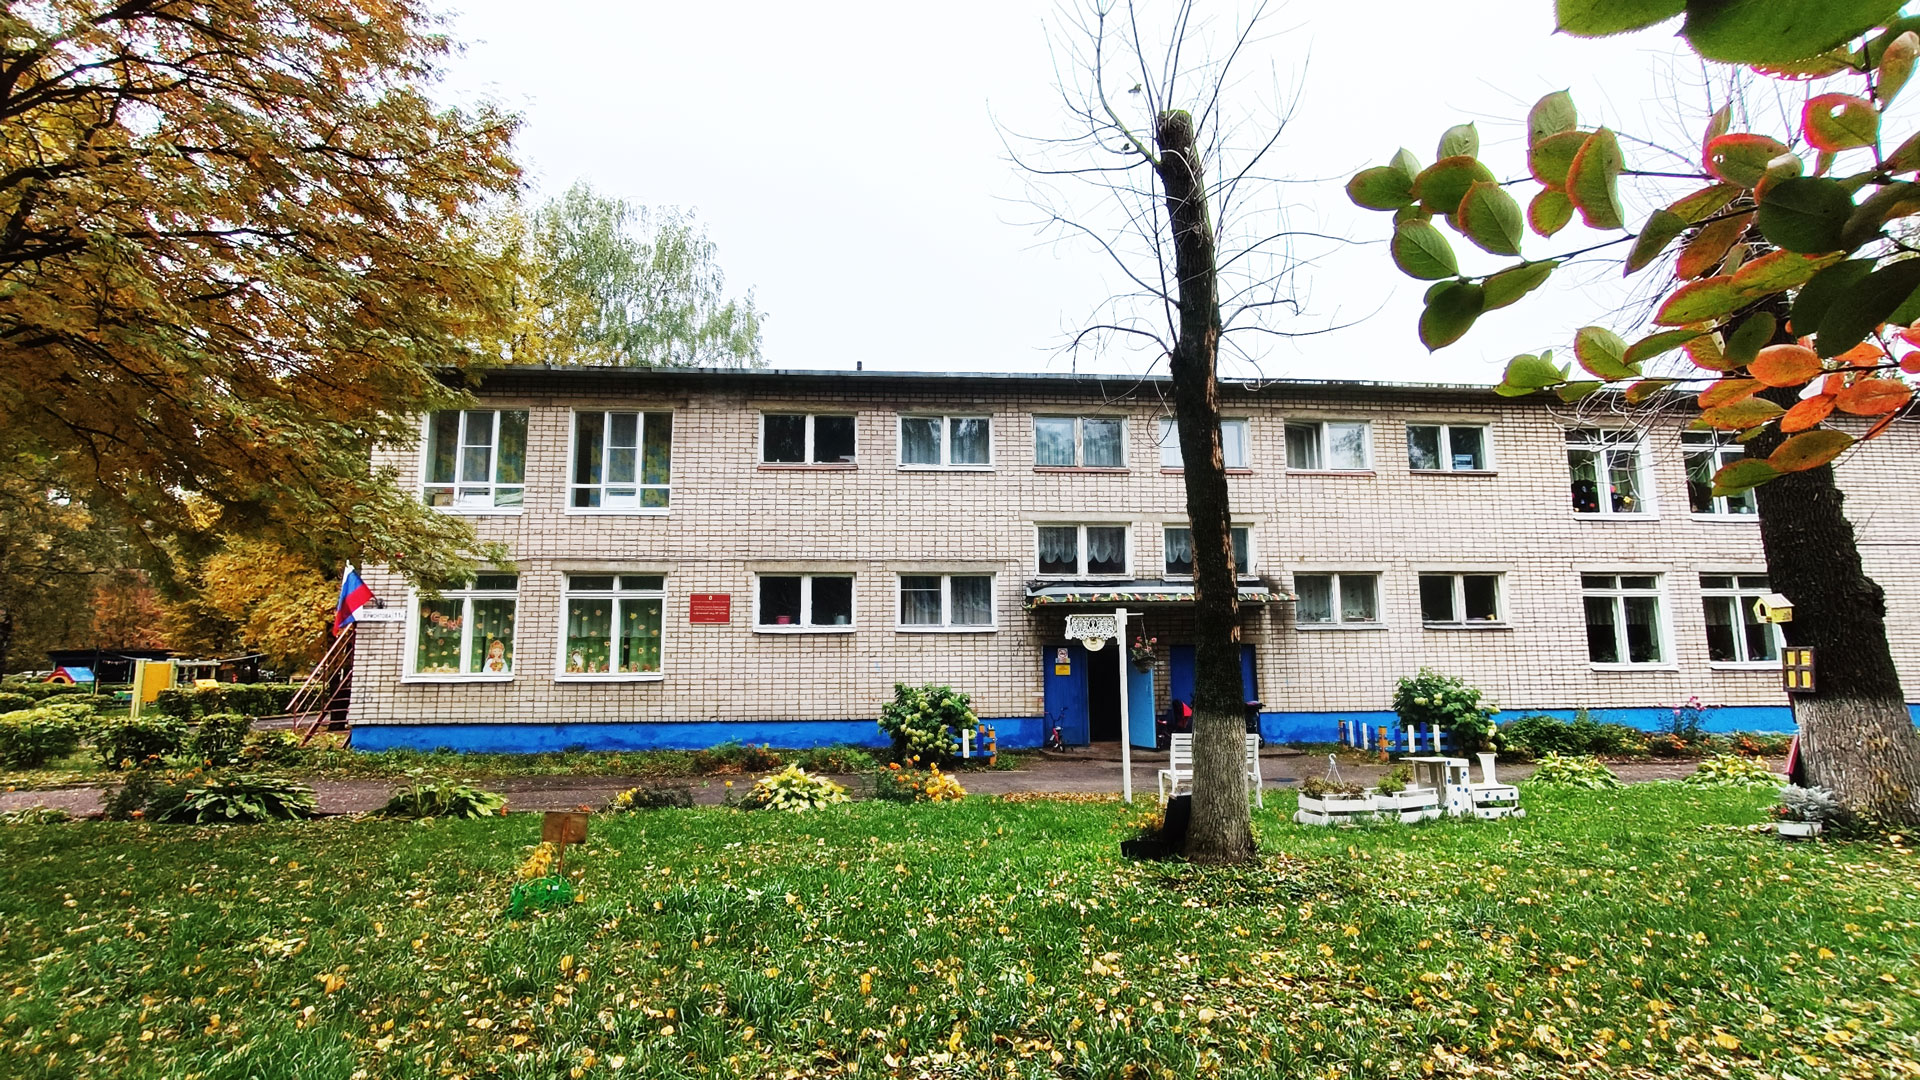 Детский сад 105 Ярославль: общий вид здания.